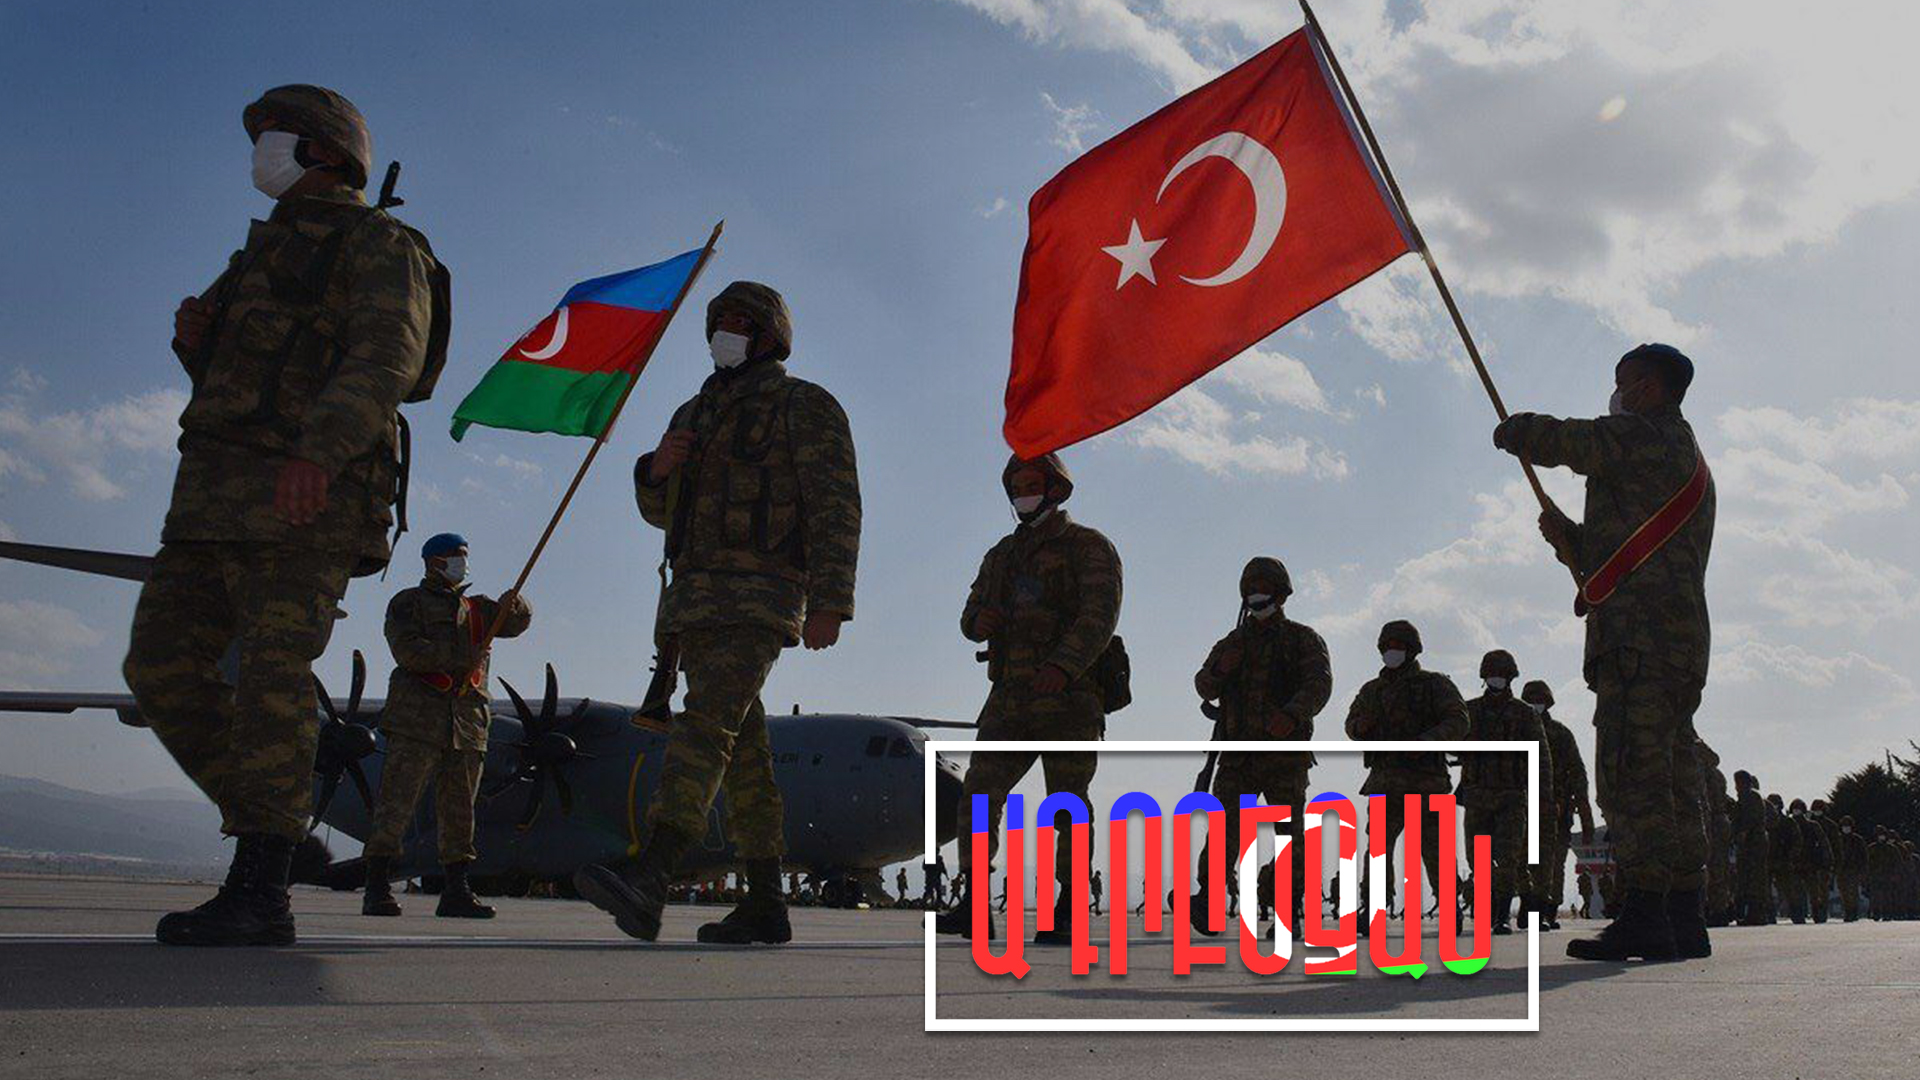 Թուրք-ադրբեջանական ուժի ցուցադրություն՝ Իրանի հետ սահմանին